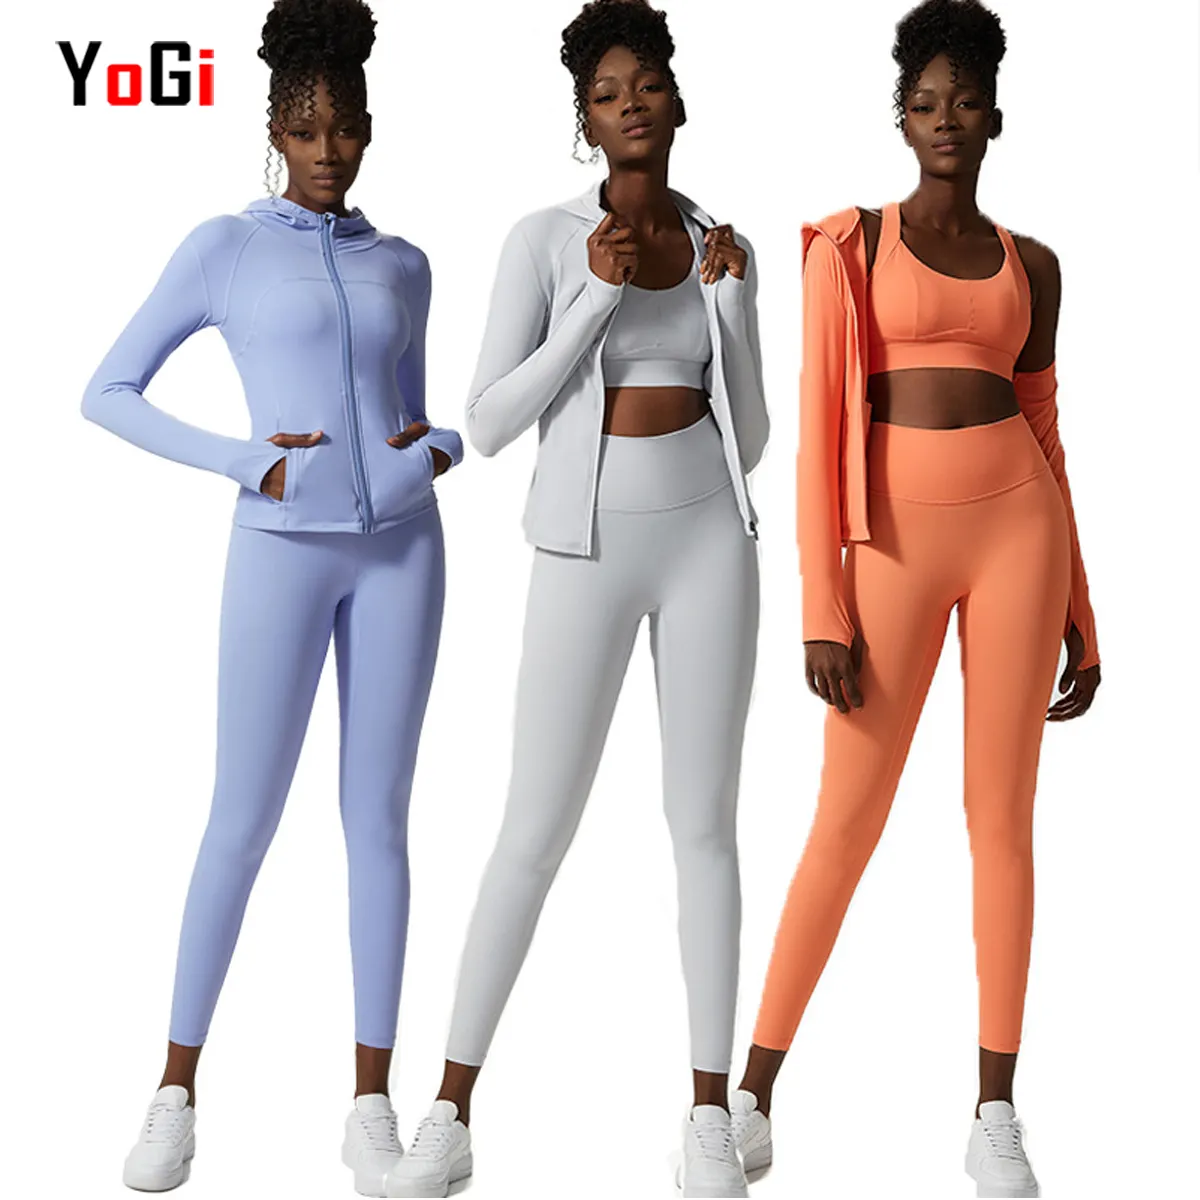 Toptan özel sıcak moda Slim Fit Blazer aktif egzersiz kıyafeti 3 adet kızlar eşofman Yoga spor seti kadınlar için Hoodies